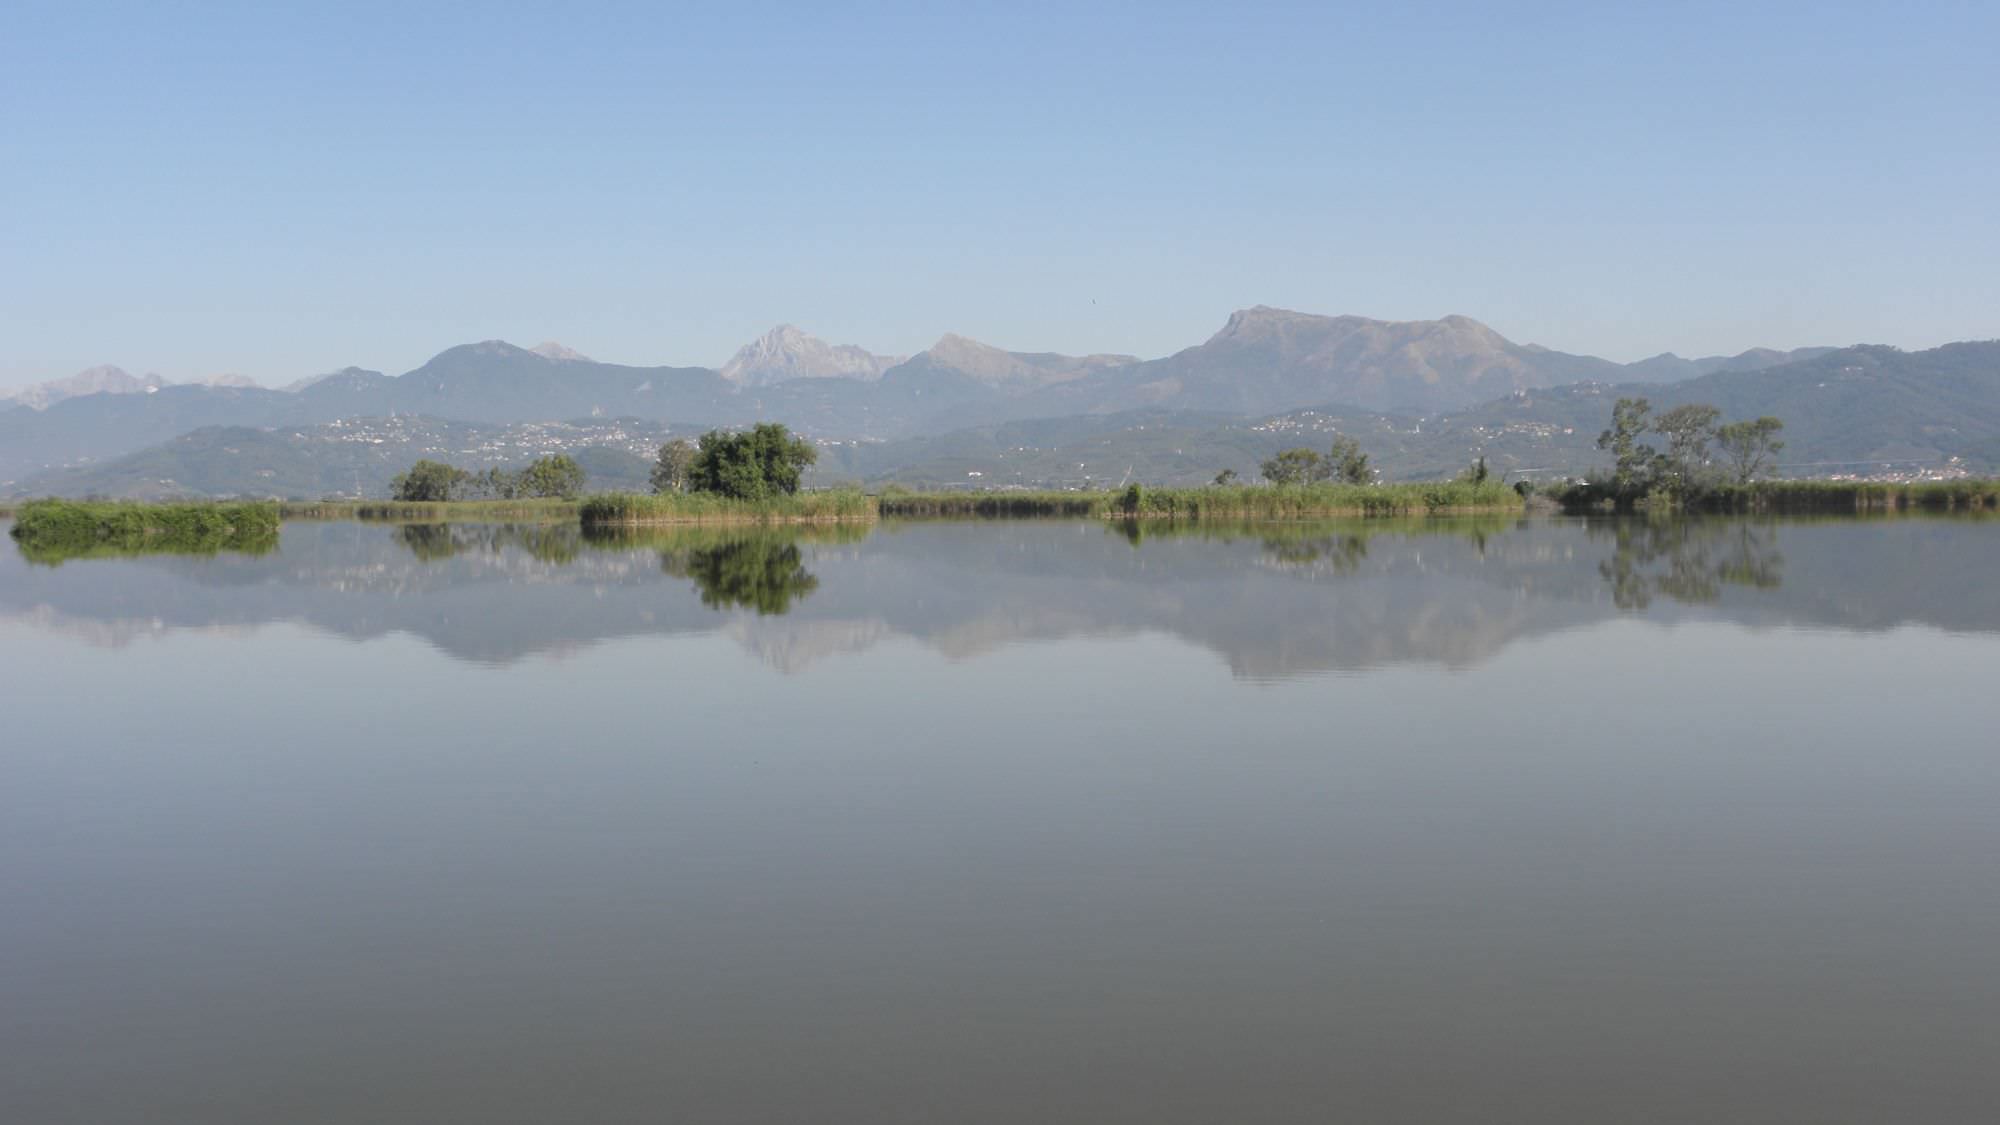 Pesca di frodo nel lago di Massaciuccoli: denunciato bracconiere